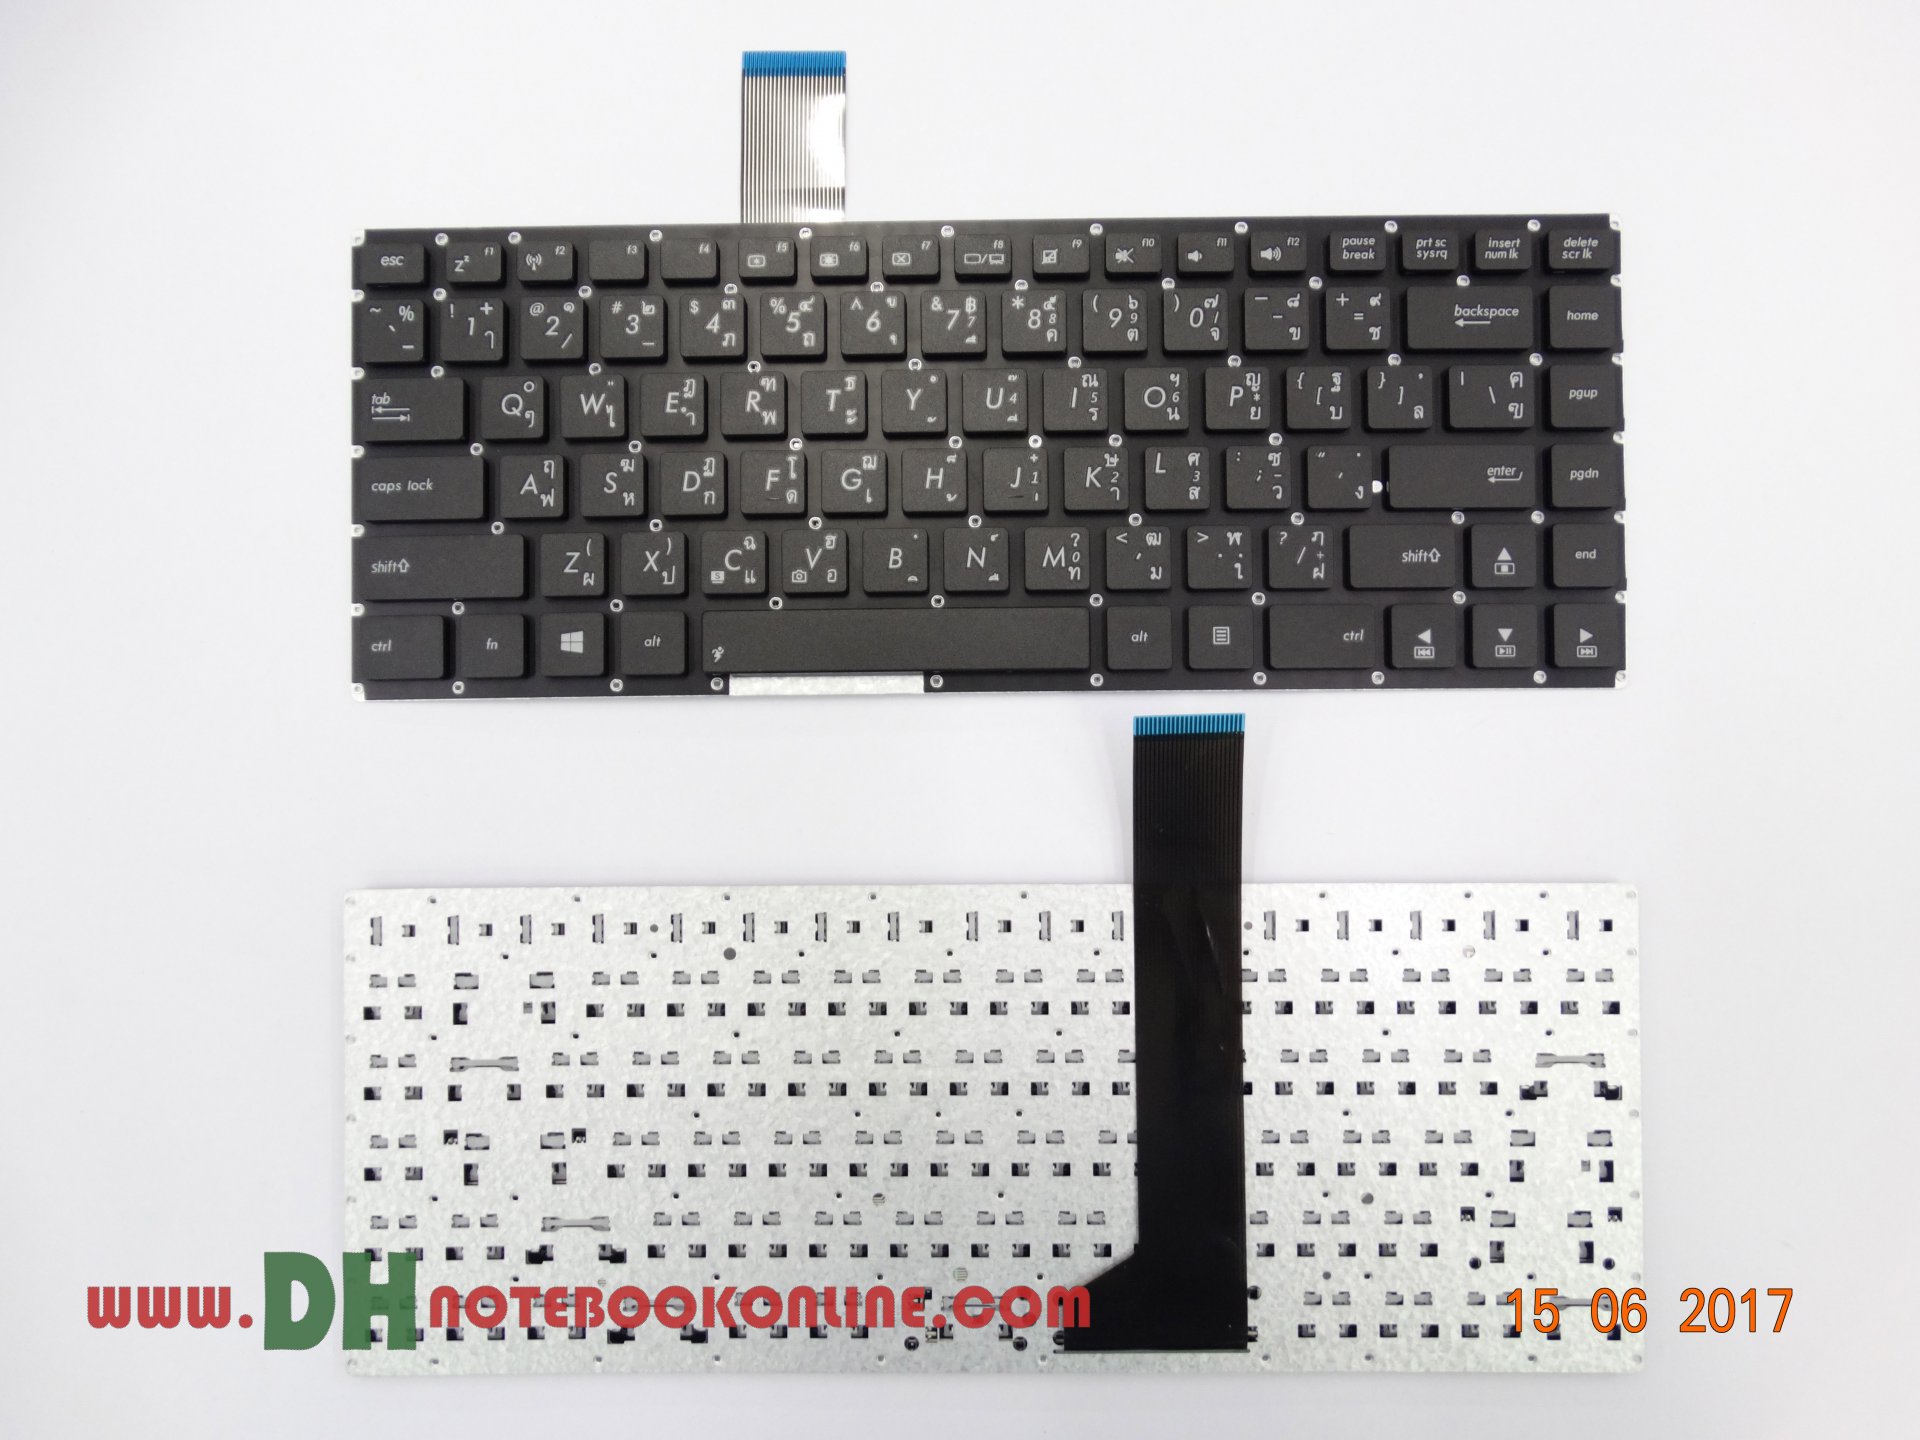 Keyboard Asus K46 แพรดำหนา